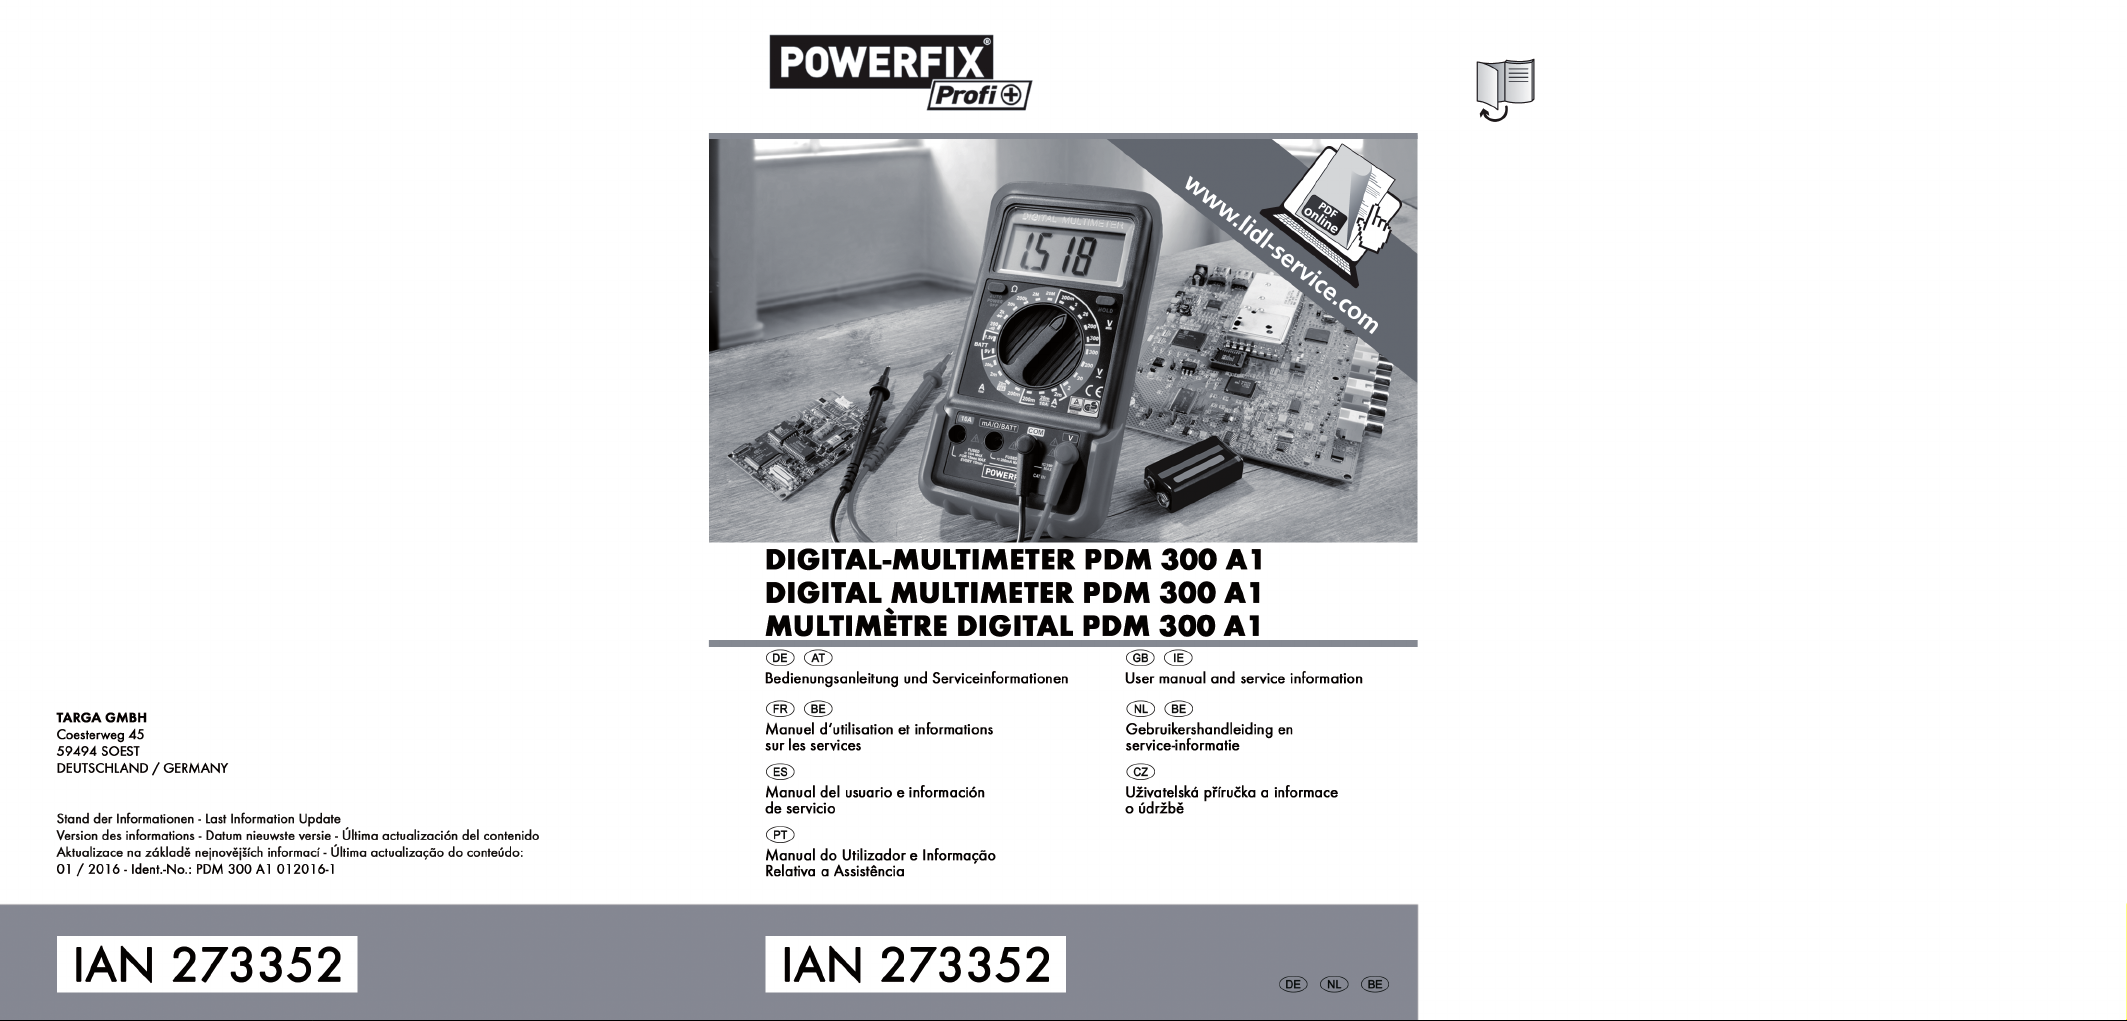 ubehagelig Badeværelse Ødelæggelse Powerfix PDM 300A1 - IAN 273352 User Manual - Libble.eu